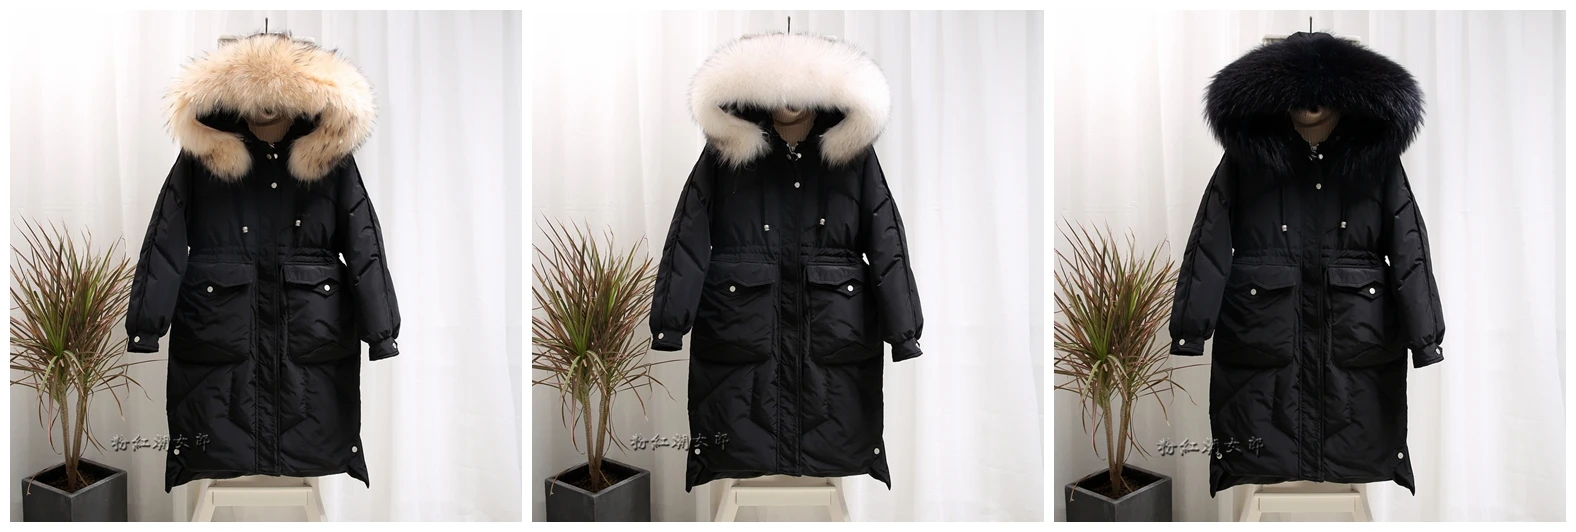 AYUNSUE пуховик для женщин с капюшоном длинное зимнее пальто для женщин большой воротник из меха енота корейское теплое пальто женские куртки KJ2551